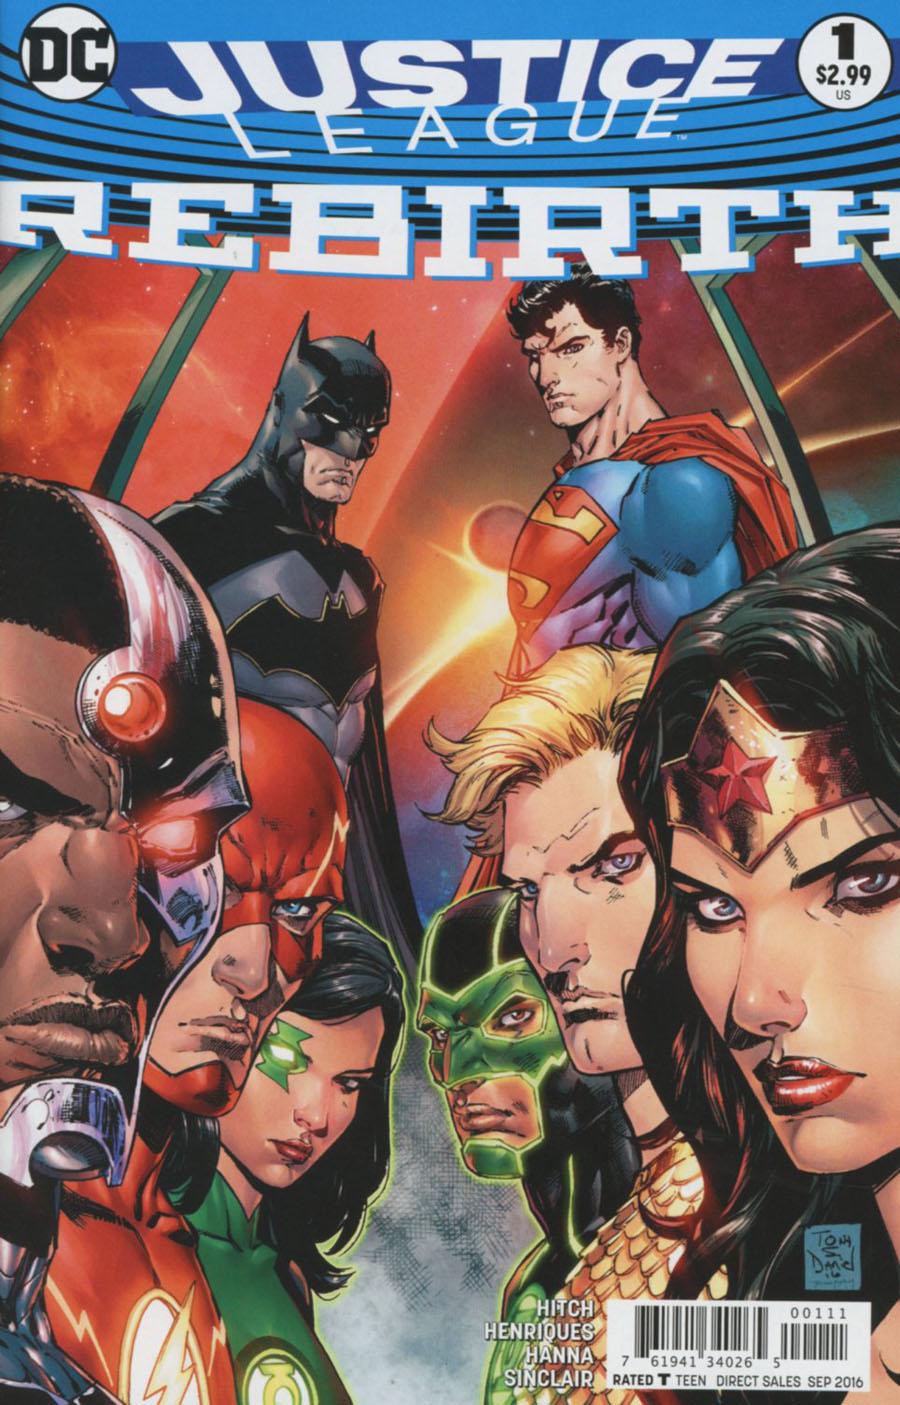 Justice League Rebirth Vol. 1 #1